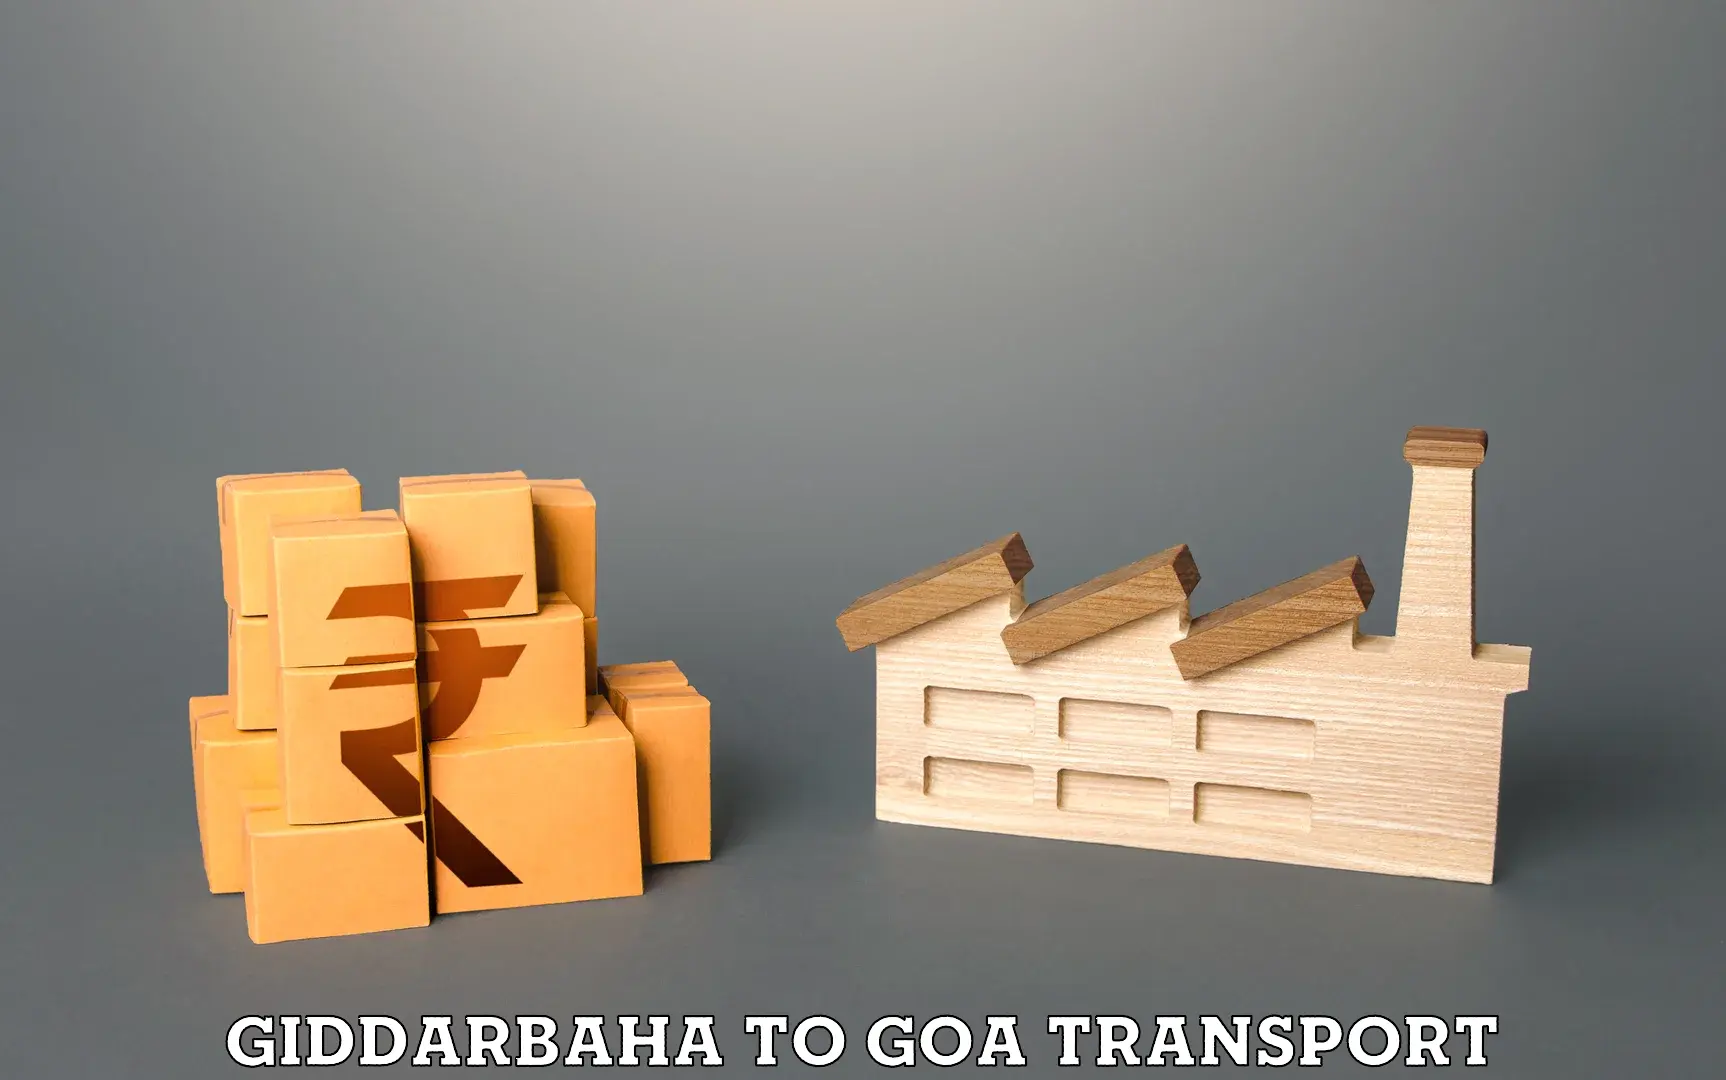 Door to door transport services in Giddarbaha to Goa University